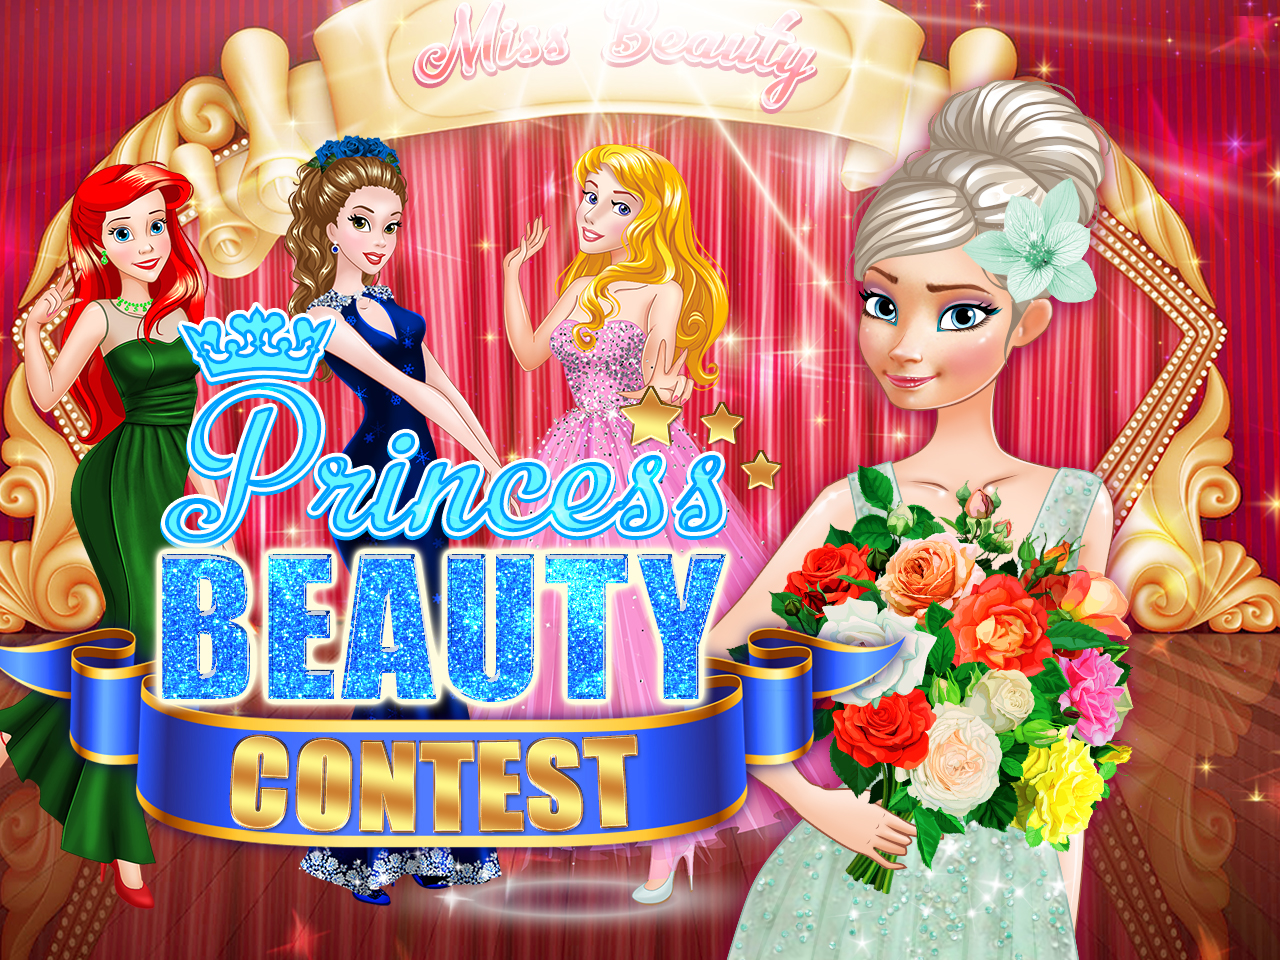 Concours de beauté princesse